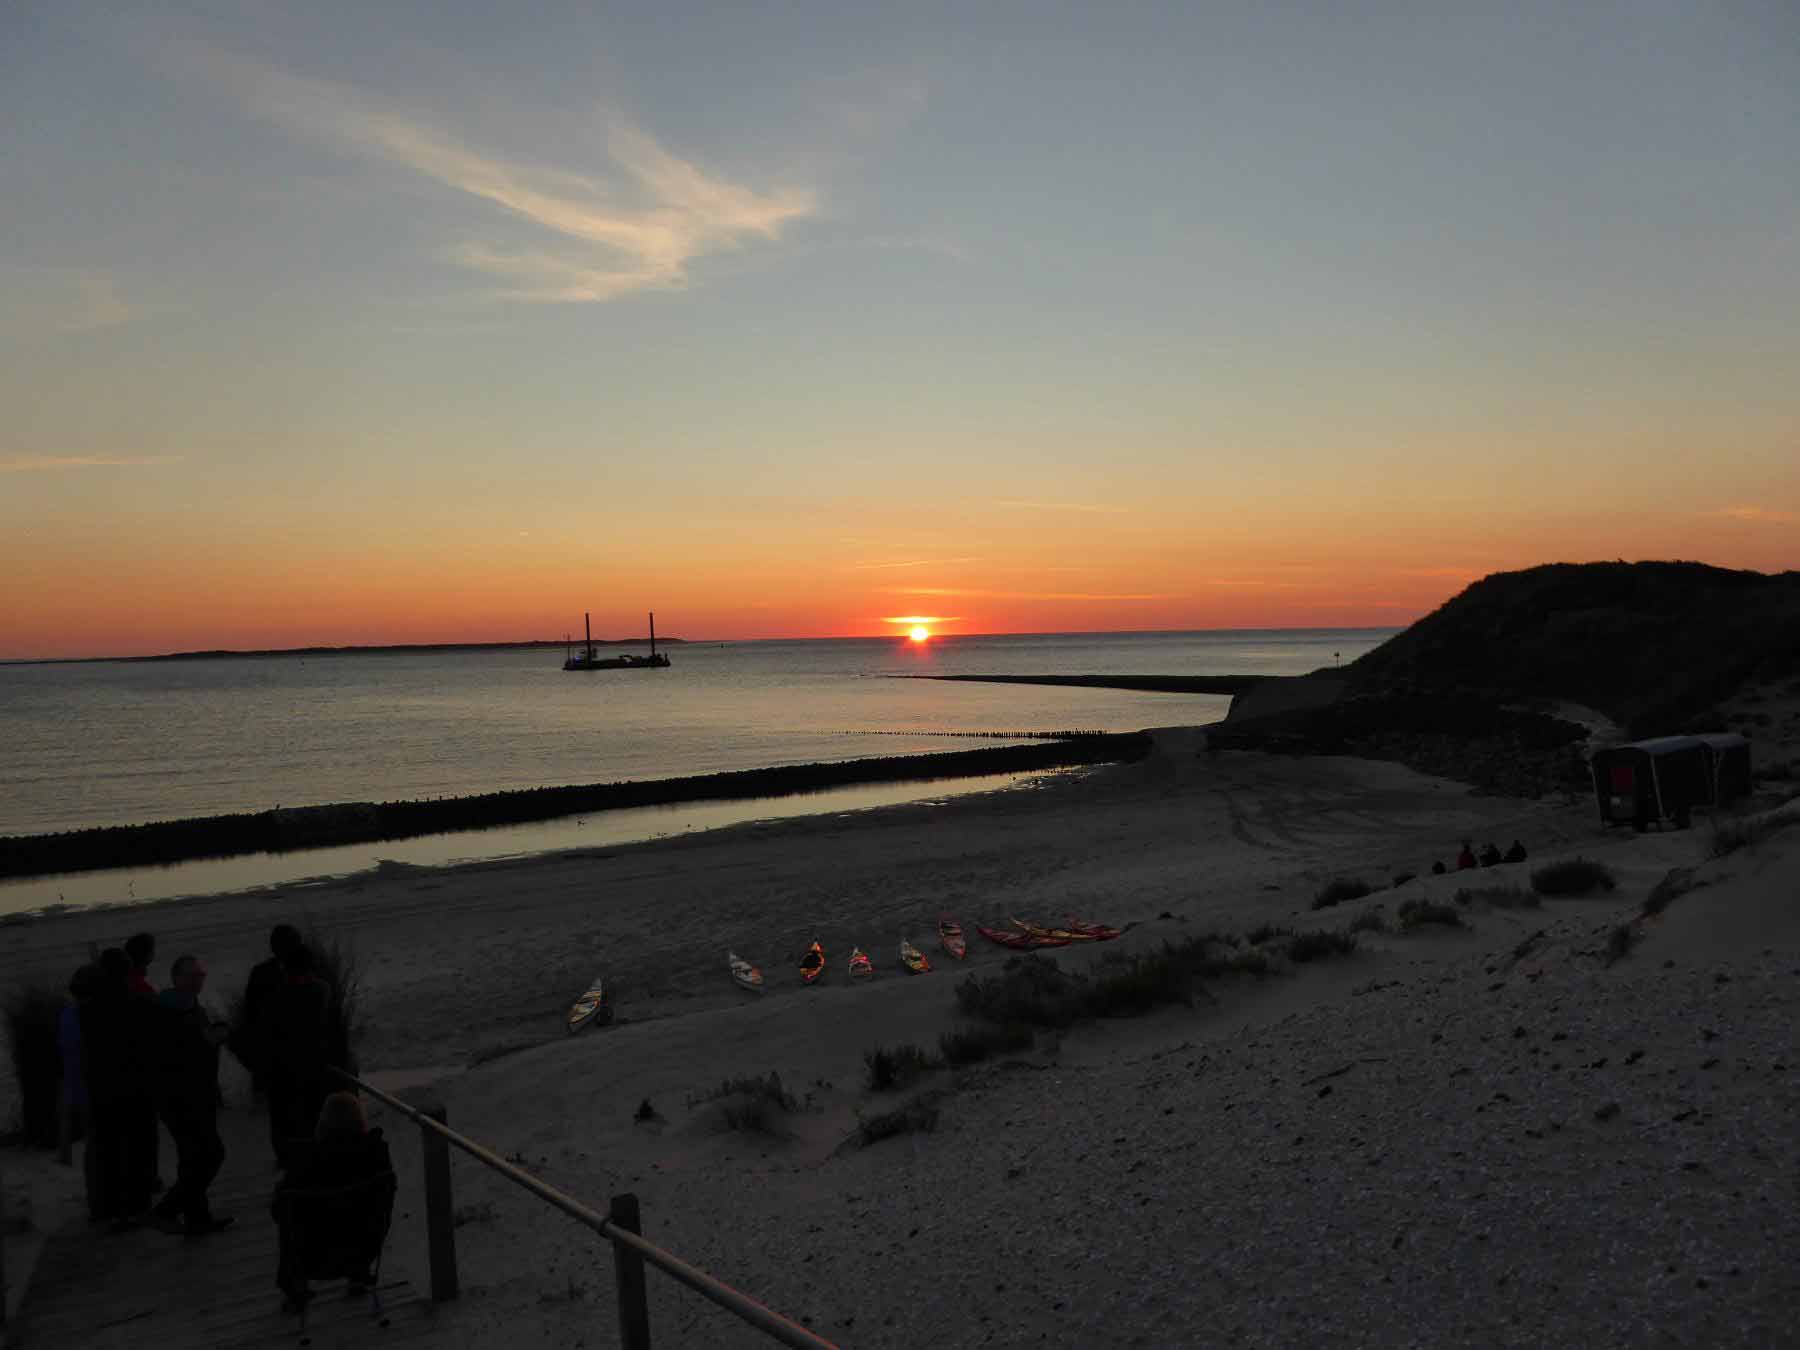 Blick vom Zeltplatz Spiekeroog auf die Nordsee mit Kajaks am Strand und Sonnenuntergang - Foto von Eckehard Bohnsack